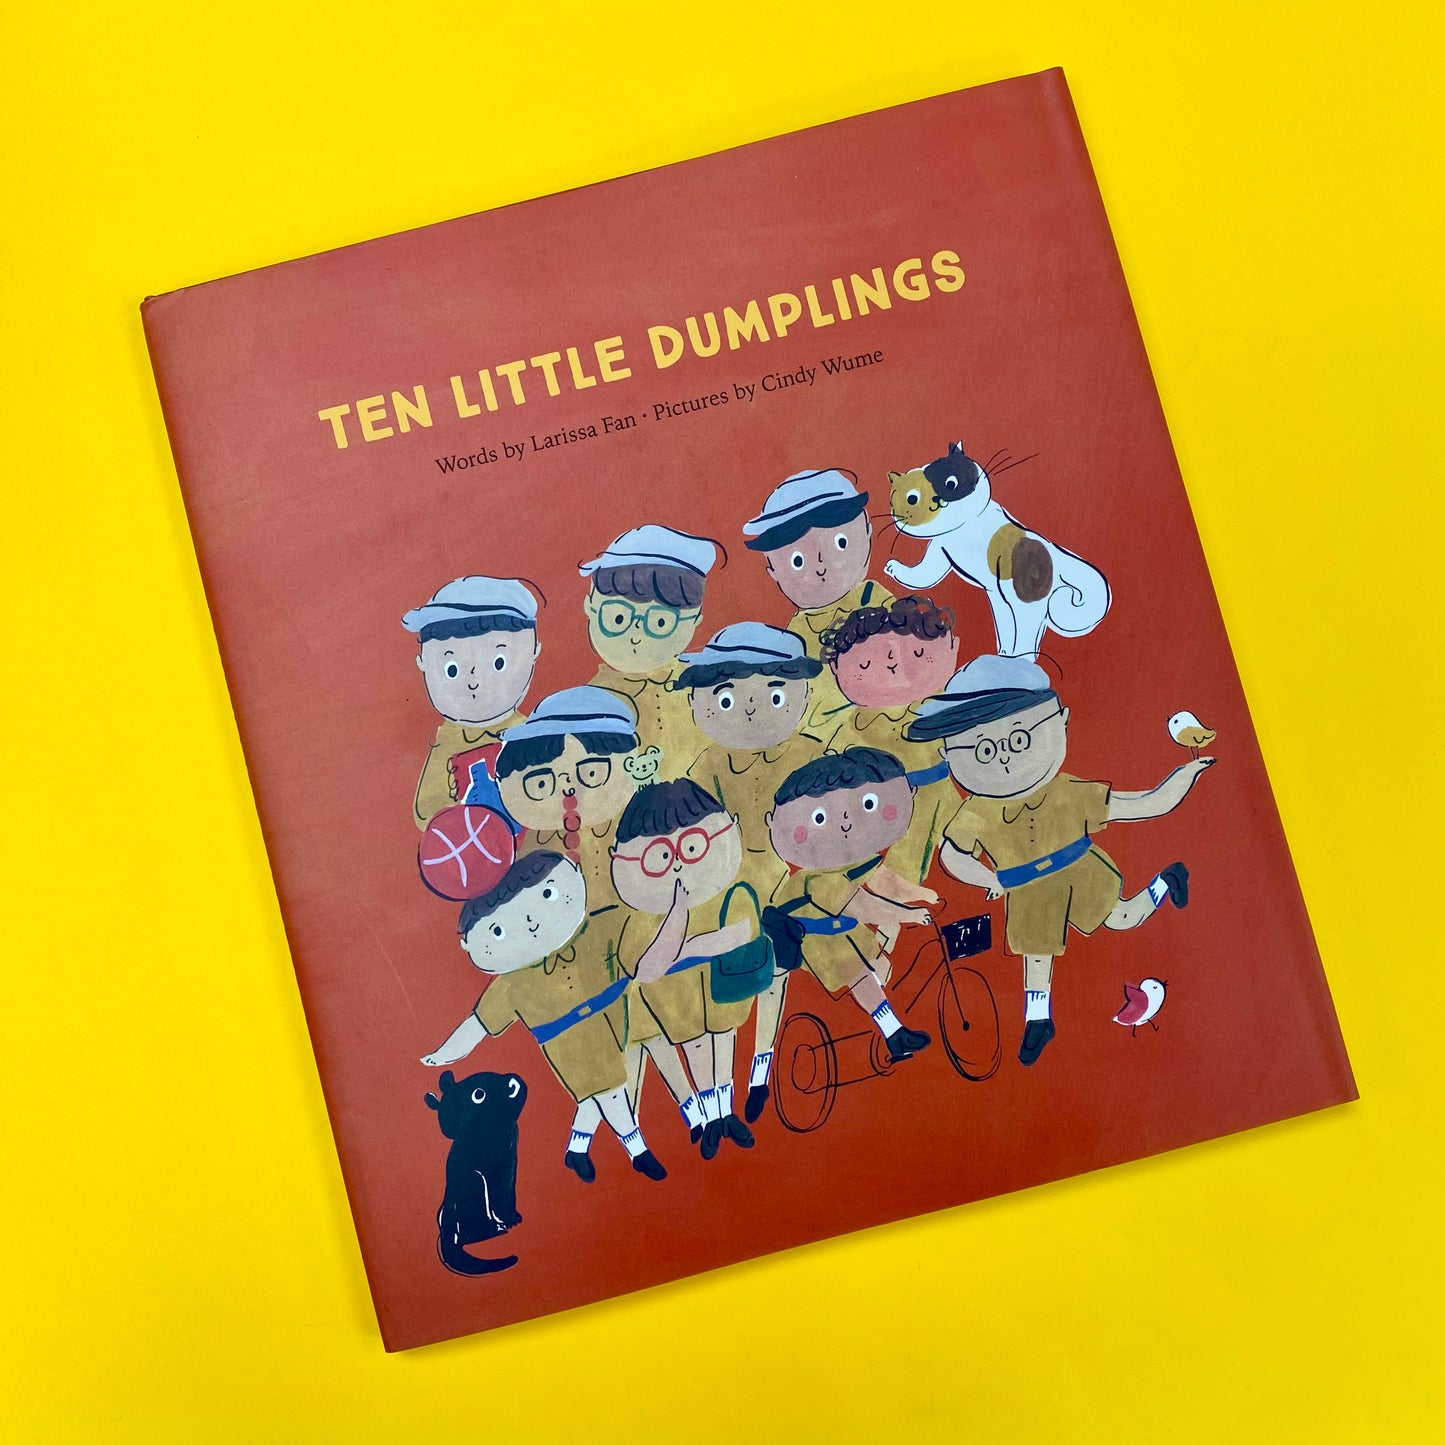 Ten Little Dumplings